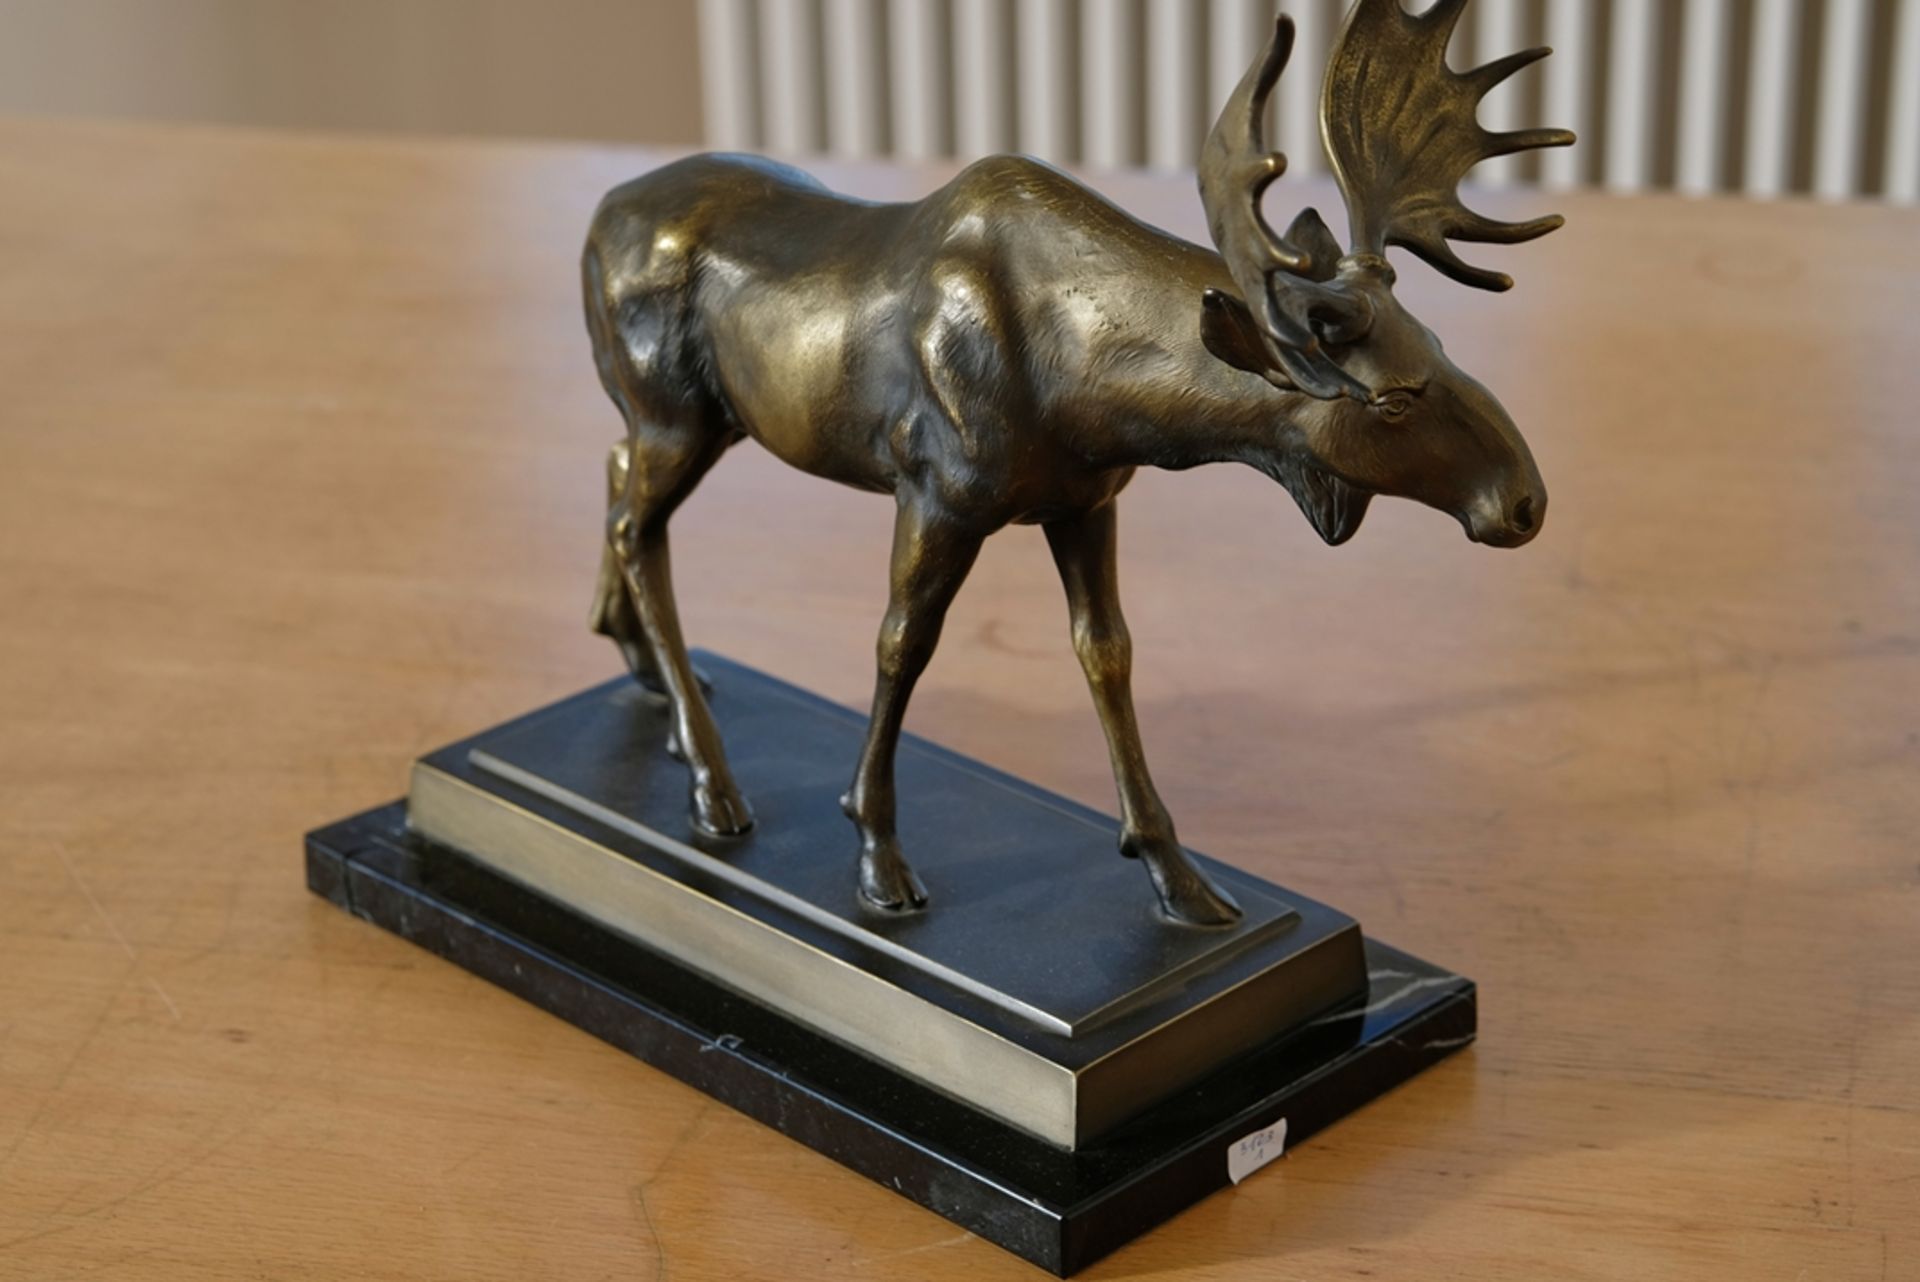 Keck, H.W. (Kreuzlingen), Moose with large antlers, standing, bronze, on plinth. - Image 2 of 4